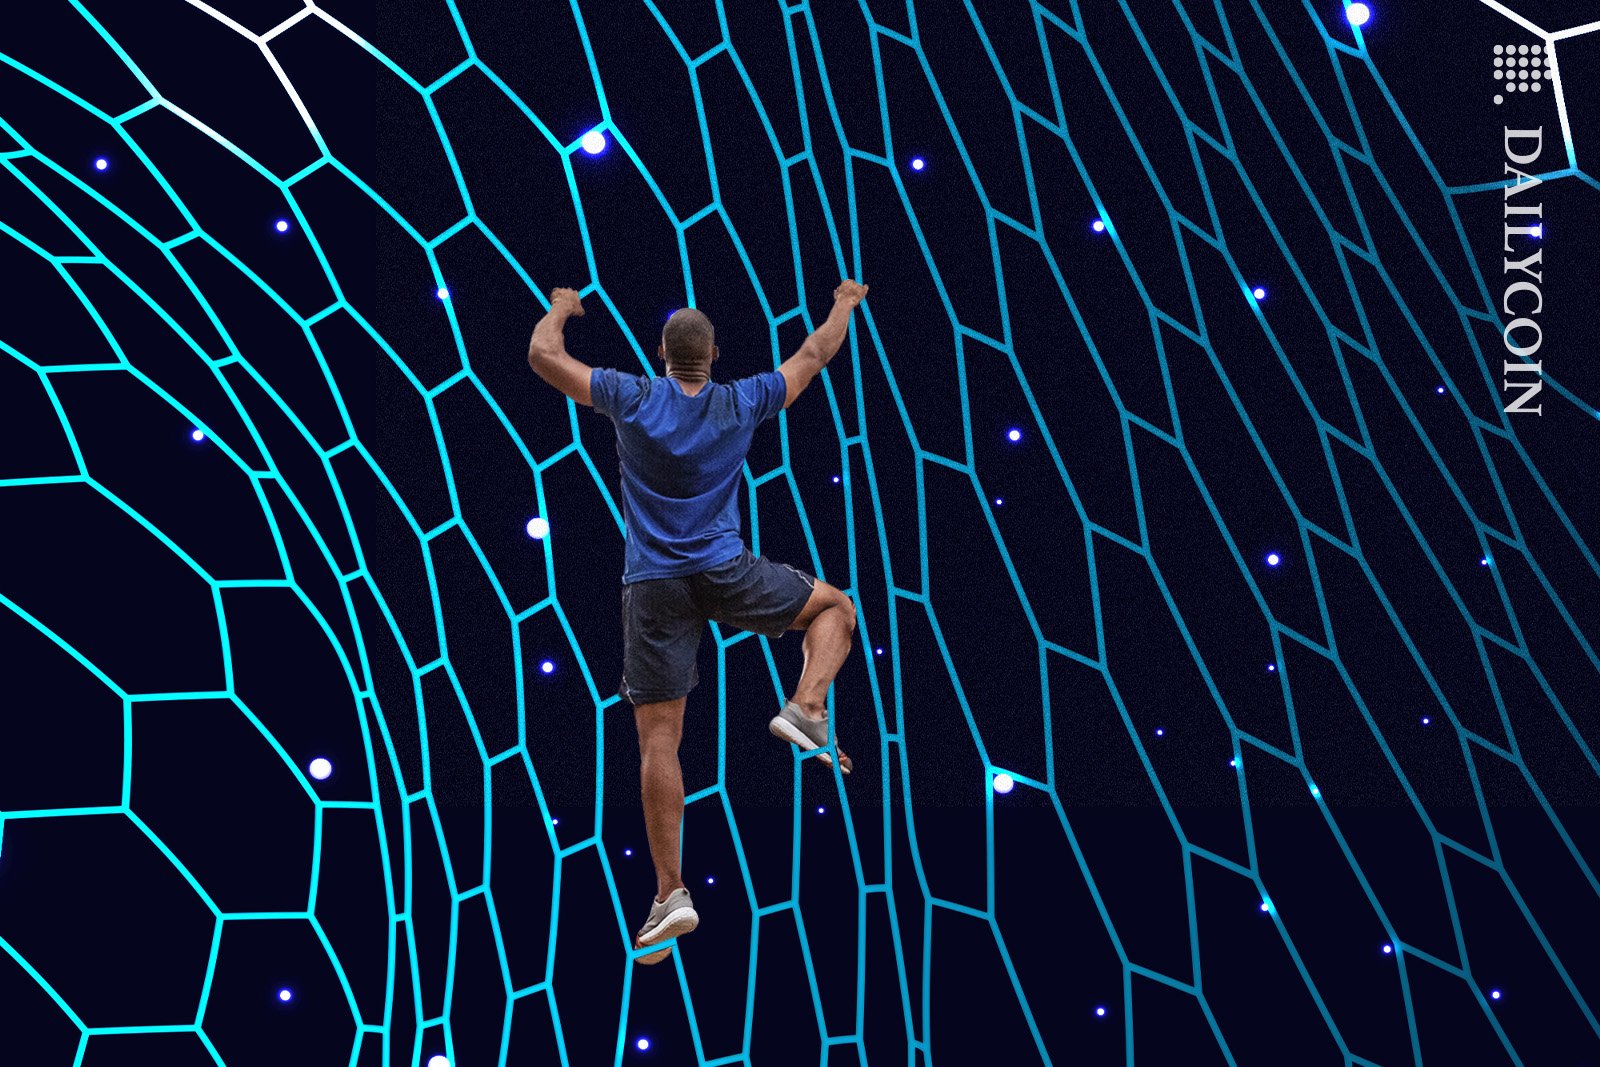 Man climbing up an endless digital net.